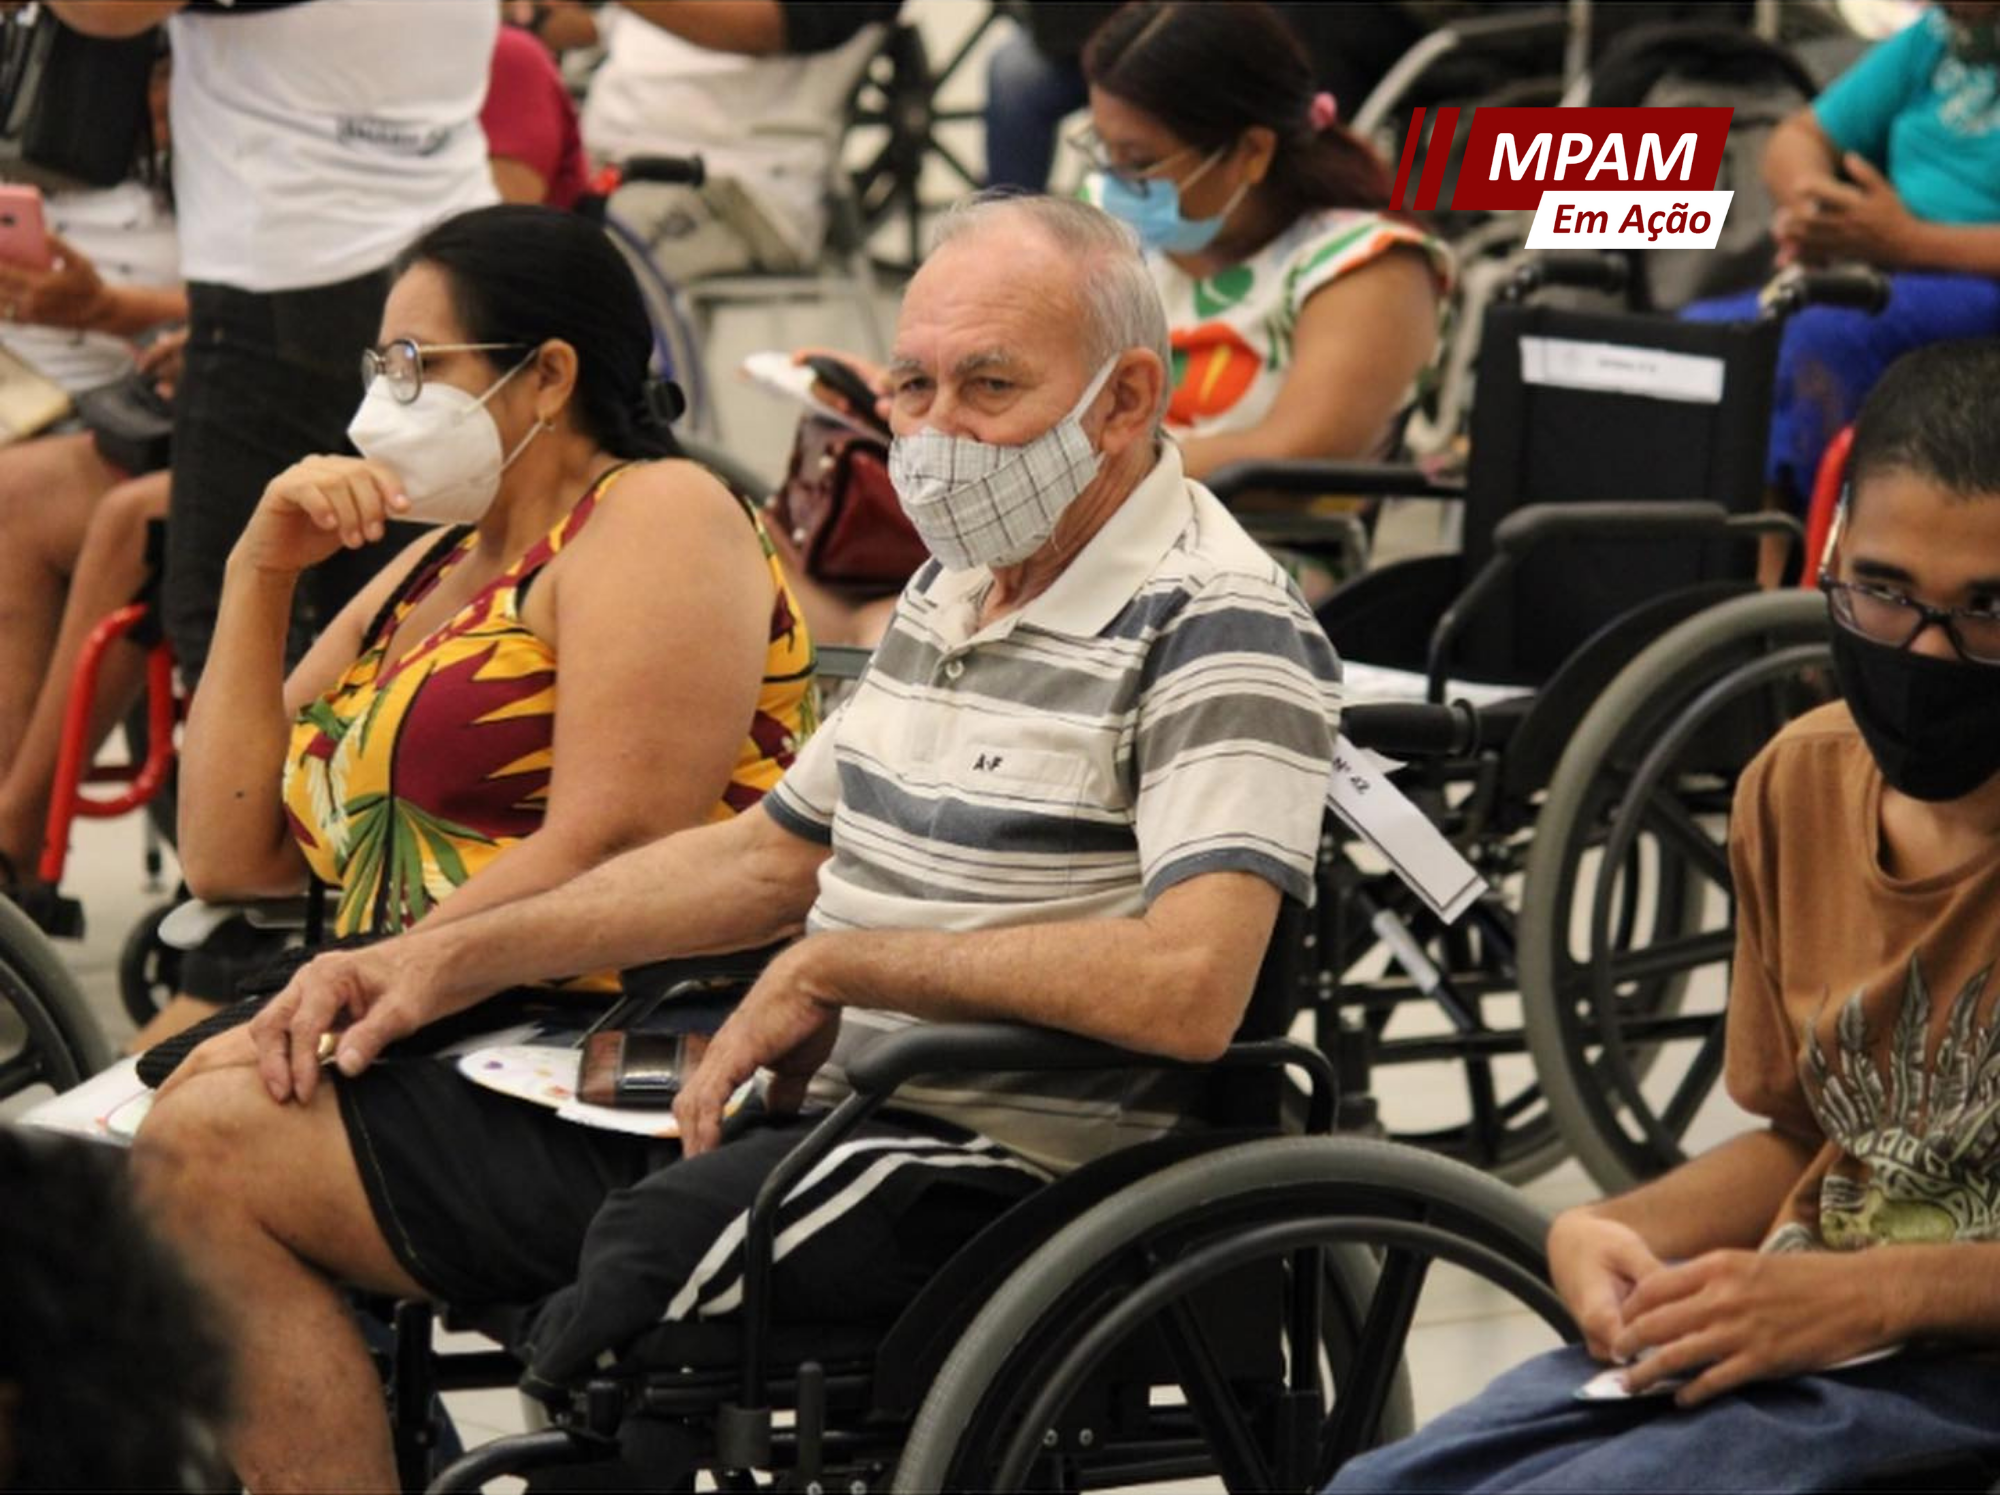 Quase 70 vagas de emprego abertas para Pessoas com Deficiência (PcDs) em Manaus